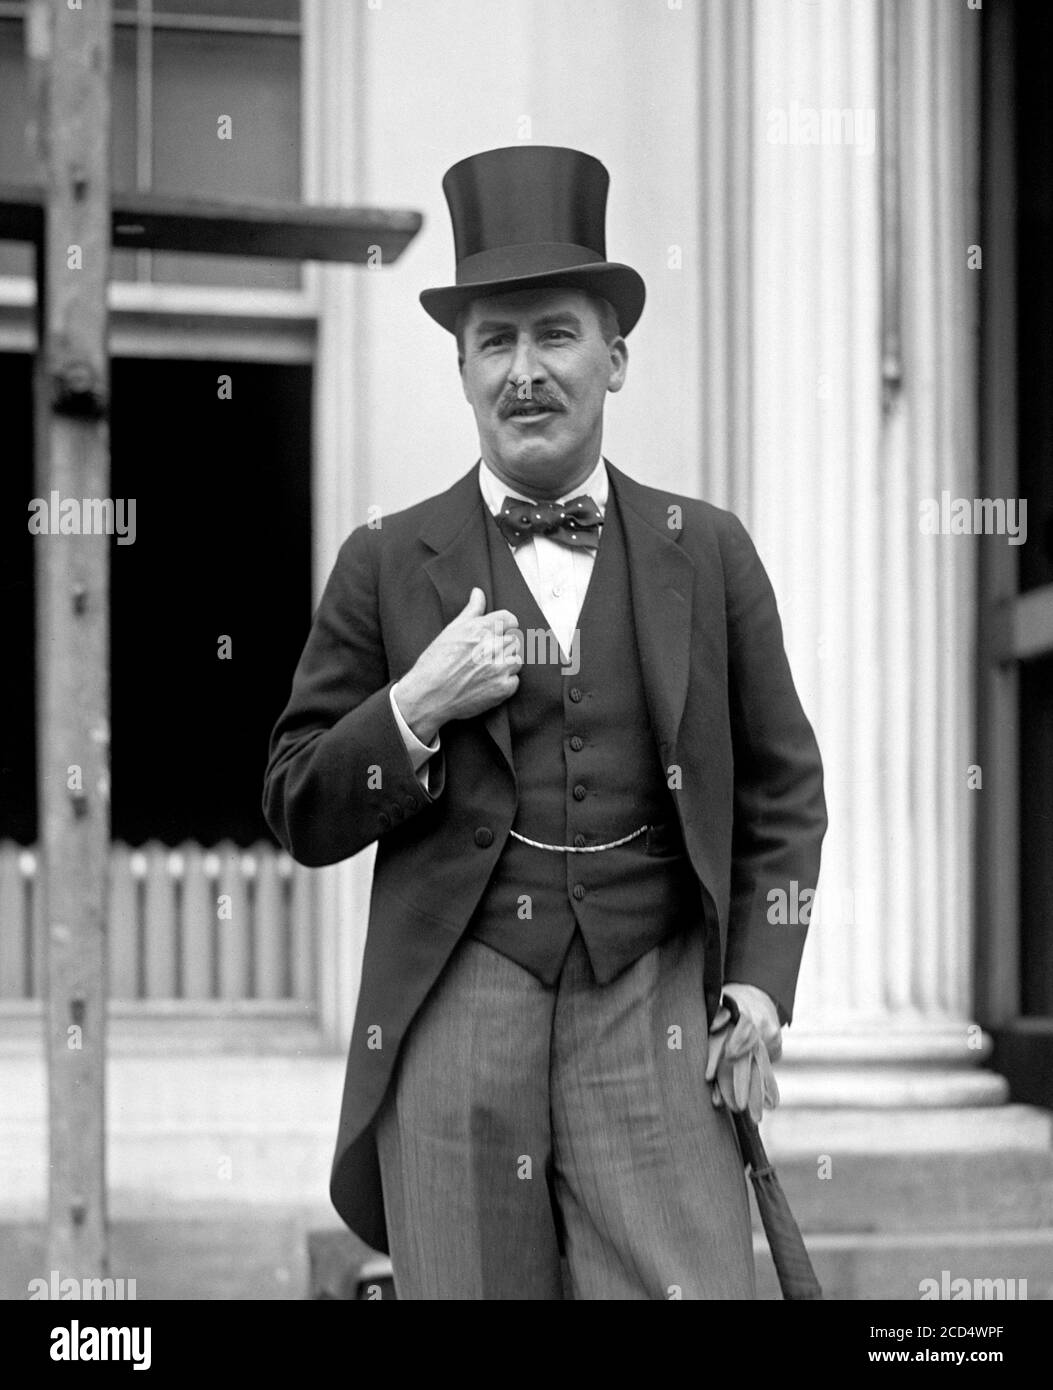 Howard carter (1874-1939), photographie de l'archéologue britannique et égyptologue prise en 1924 Banque D'Images